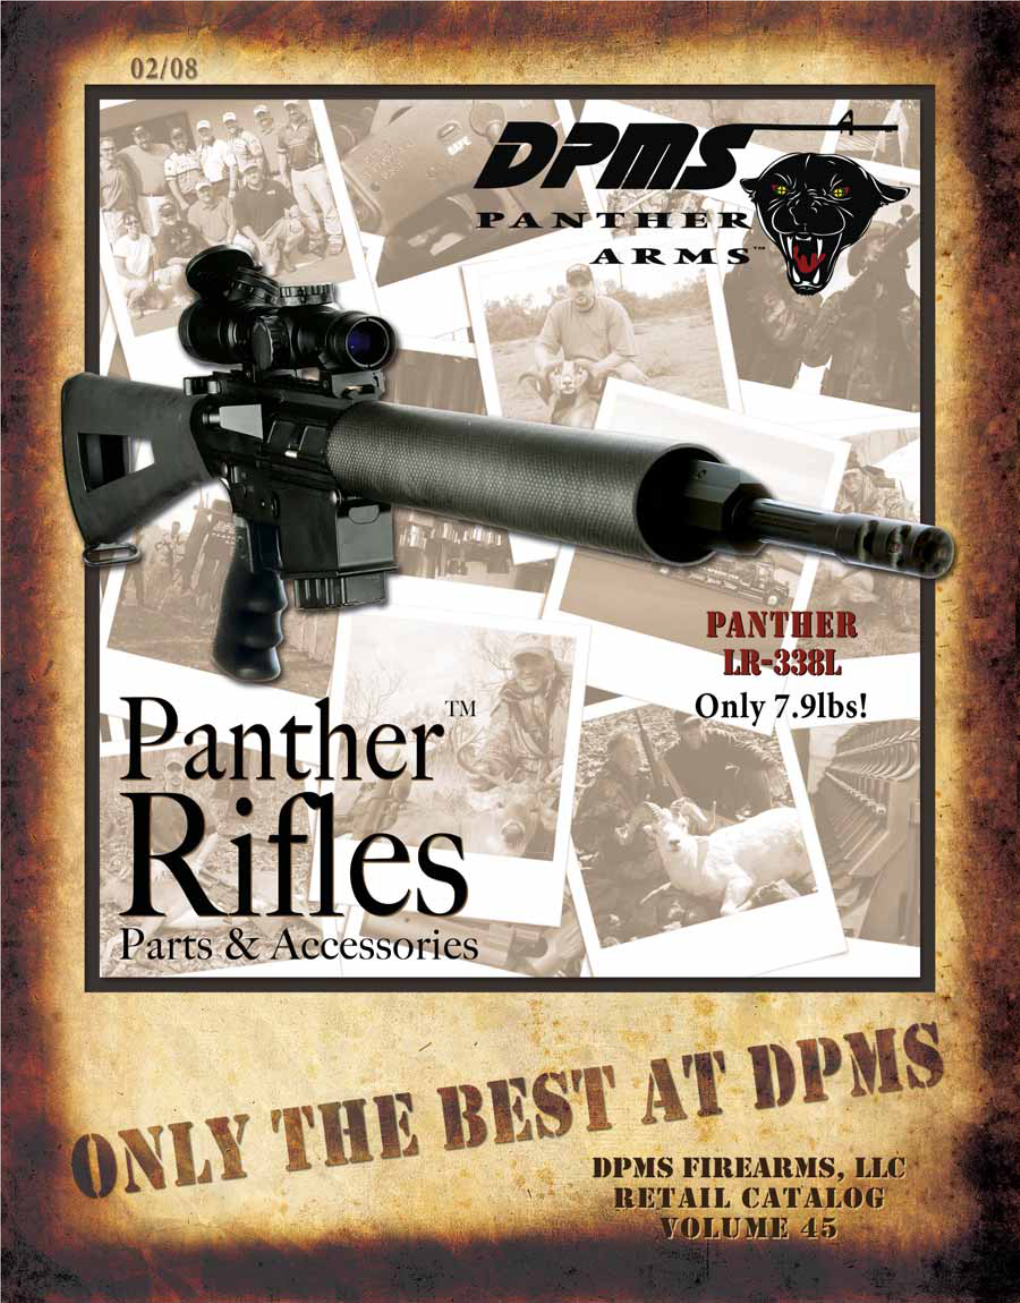 DPMS Firearms, LLC Is A